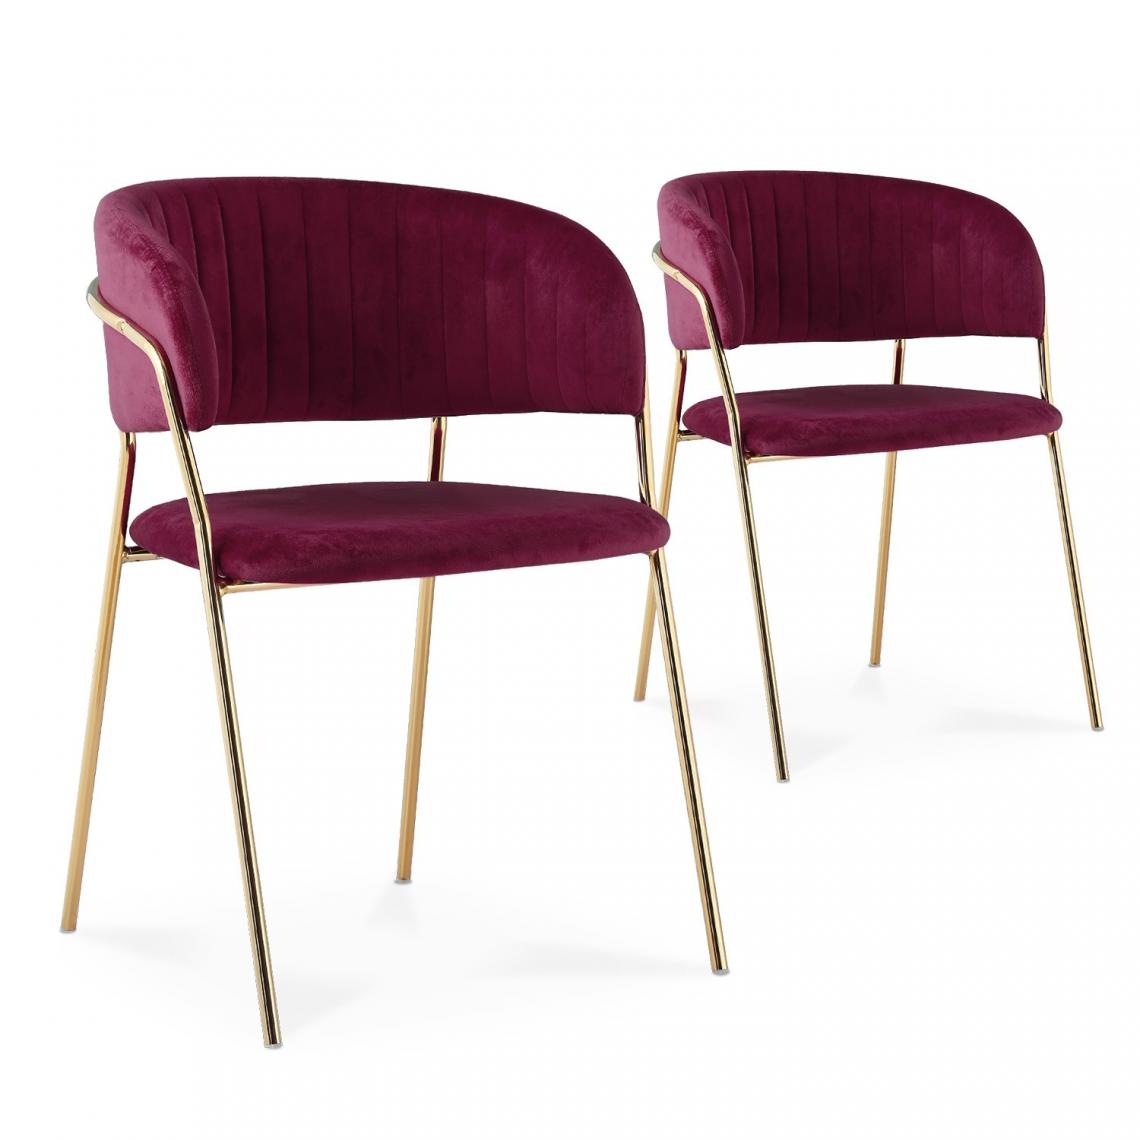 marque generique - Lot de 2 chaises Margaux velours rouge pieds or - Chaises